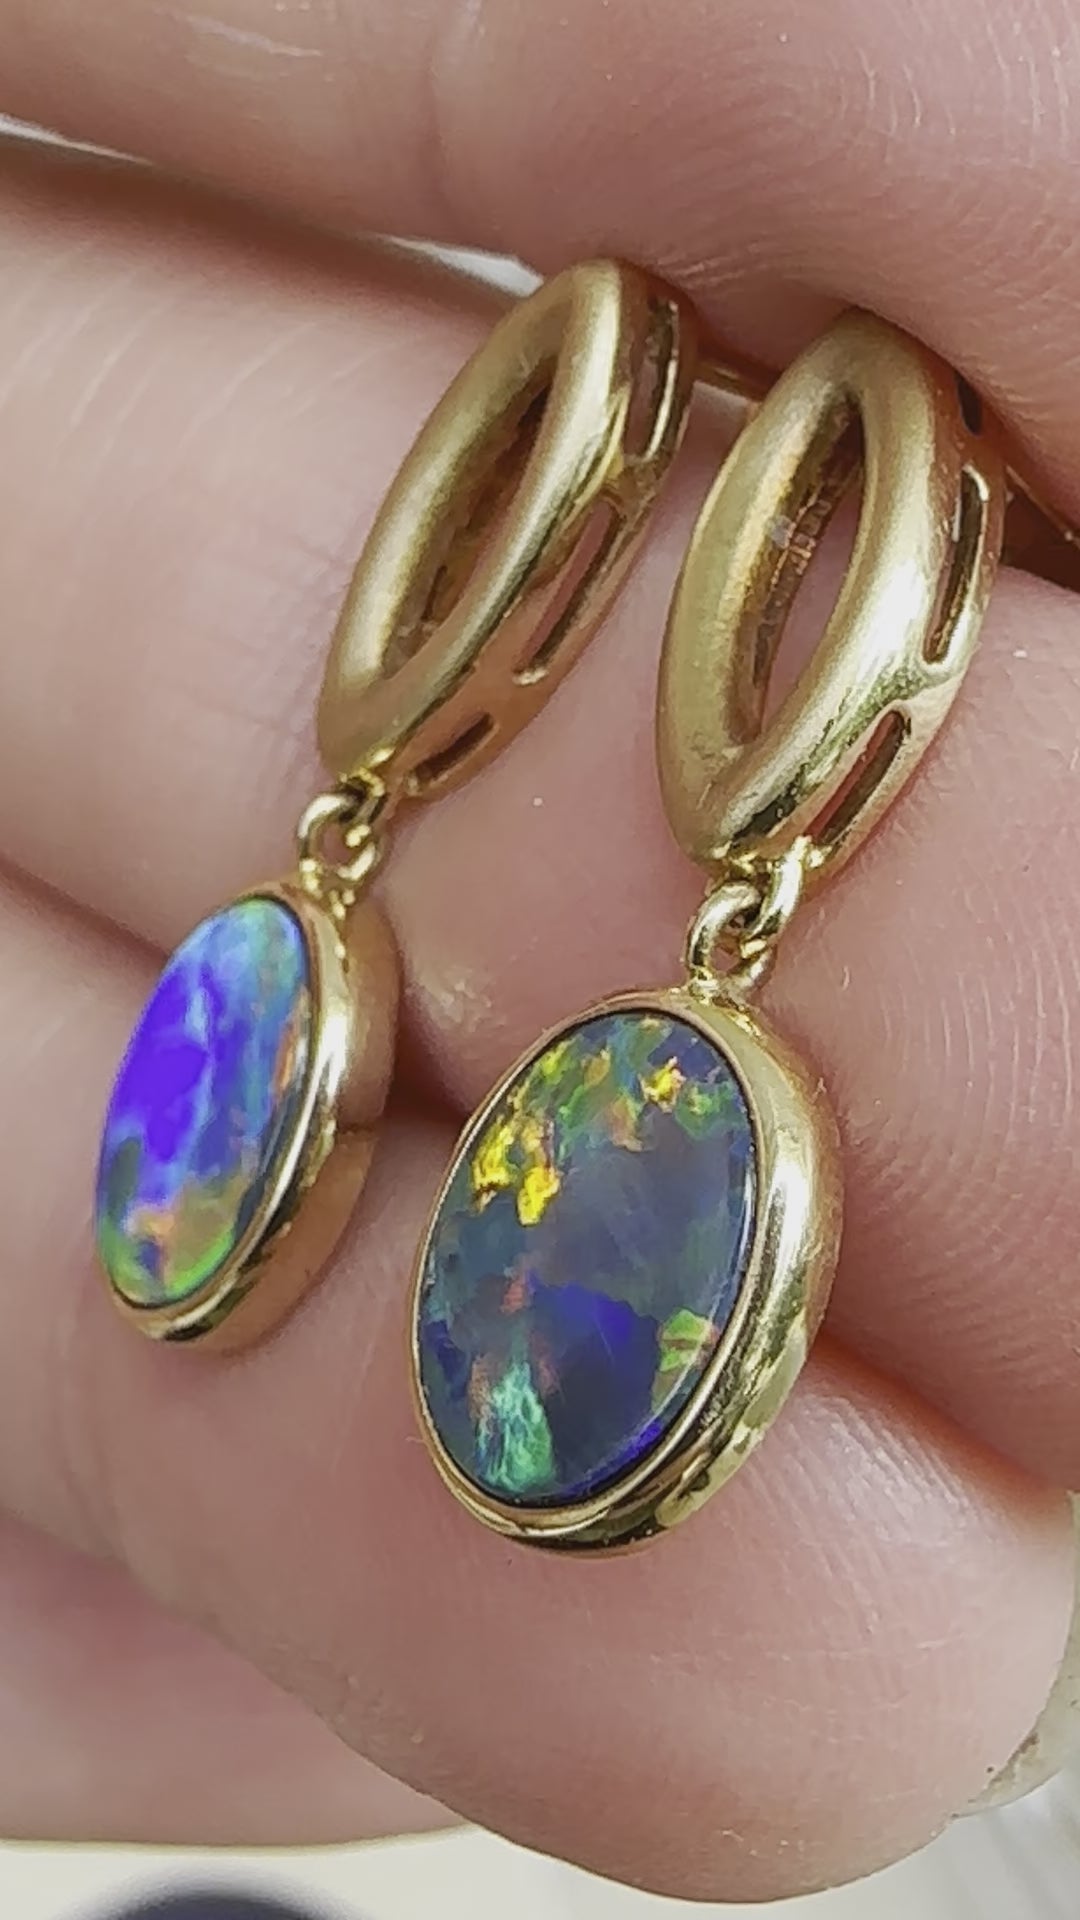 Brilliant opal earrings set in 18k yellow gold